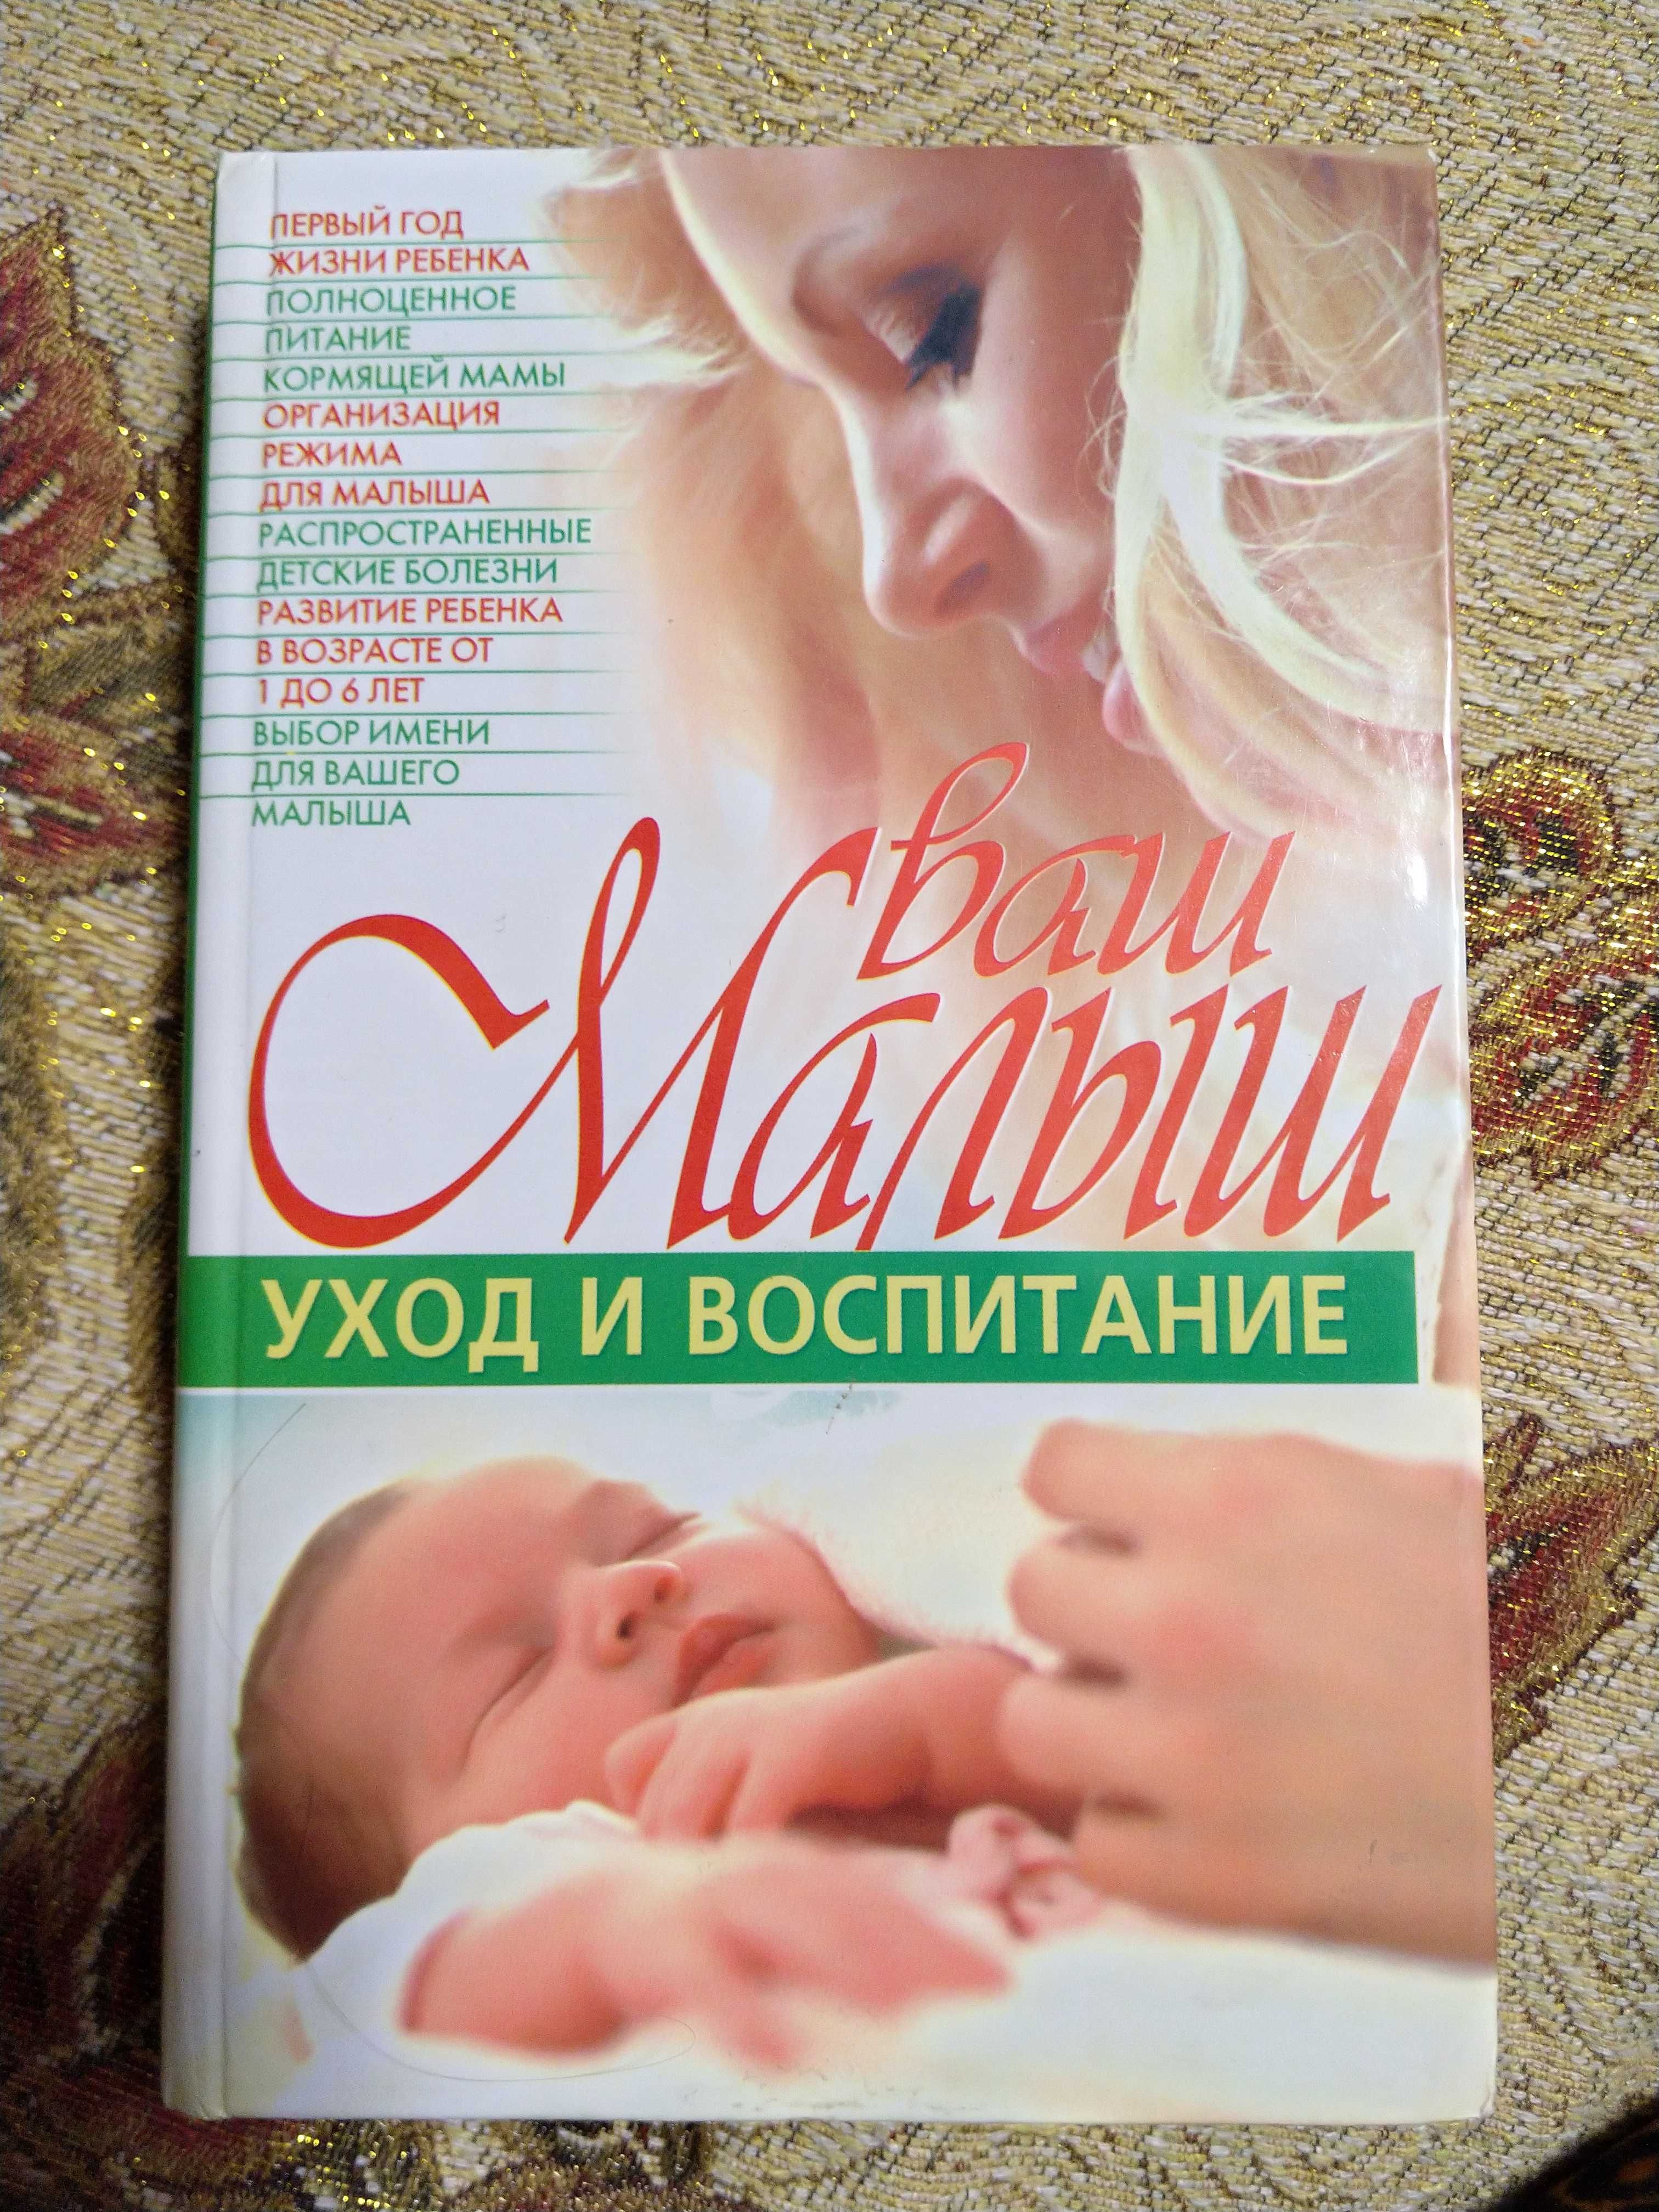 Книги п беременности уходу воспитанию ребёнка литература для родителей